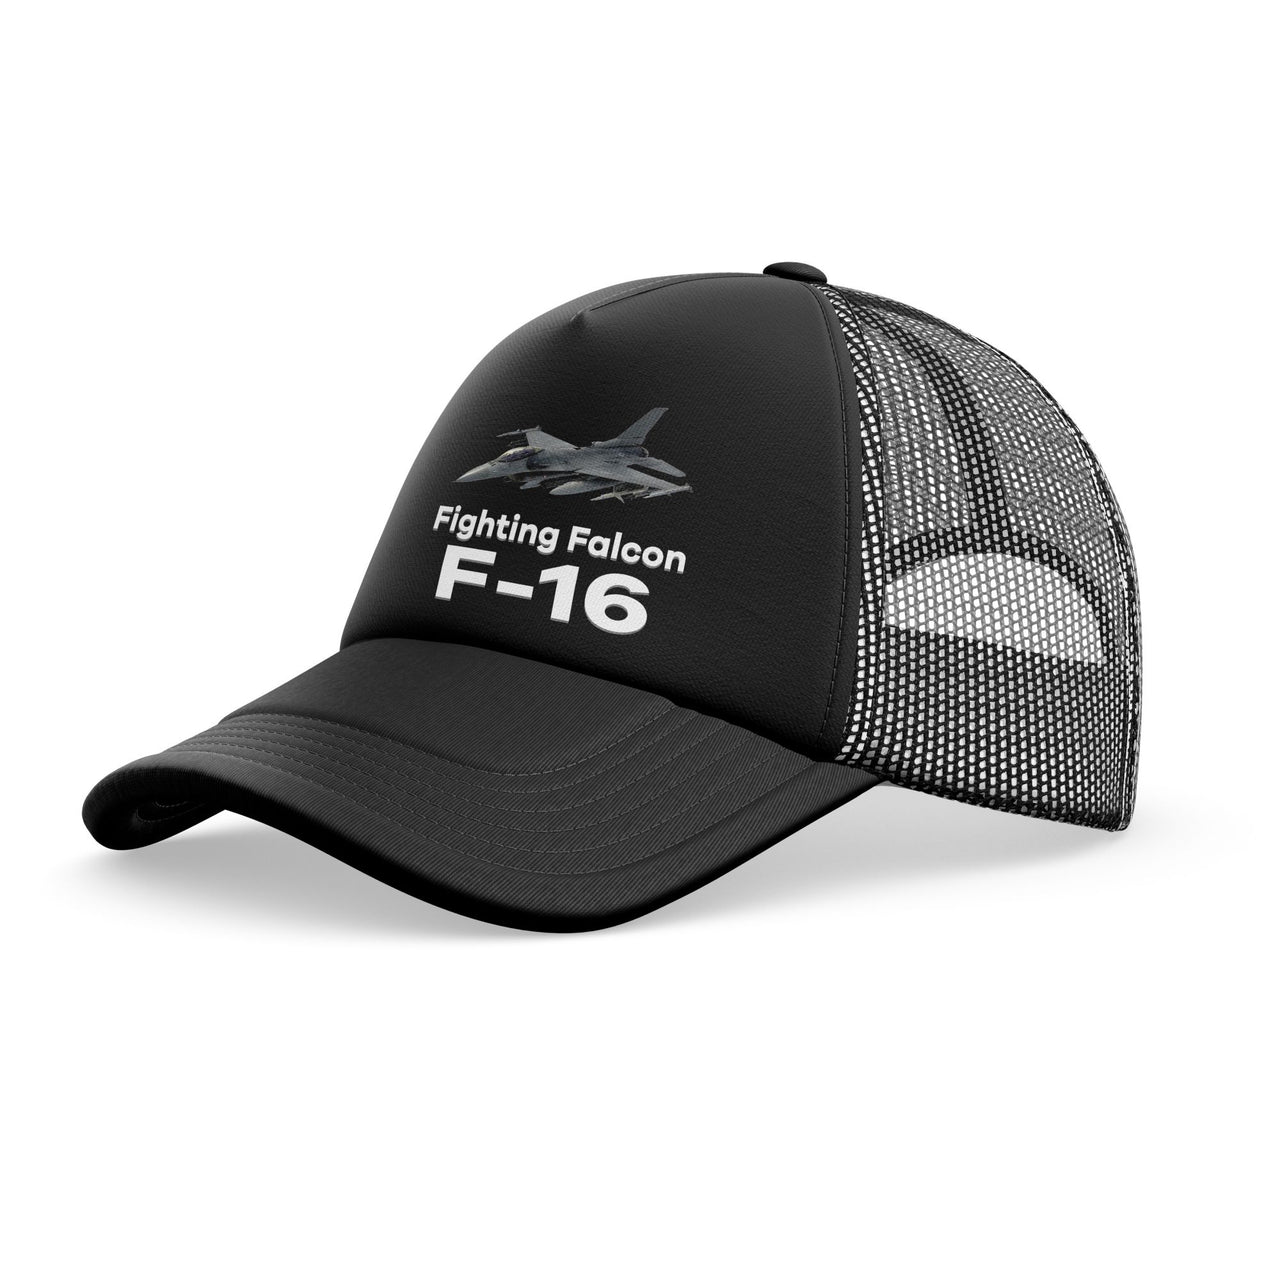 The Fighting Falcon F16 Designed Trucker Caps & Hats